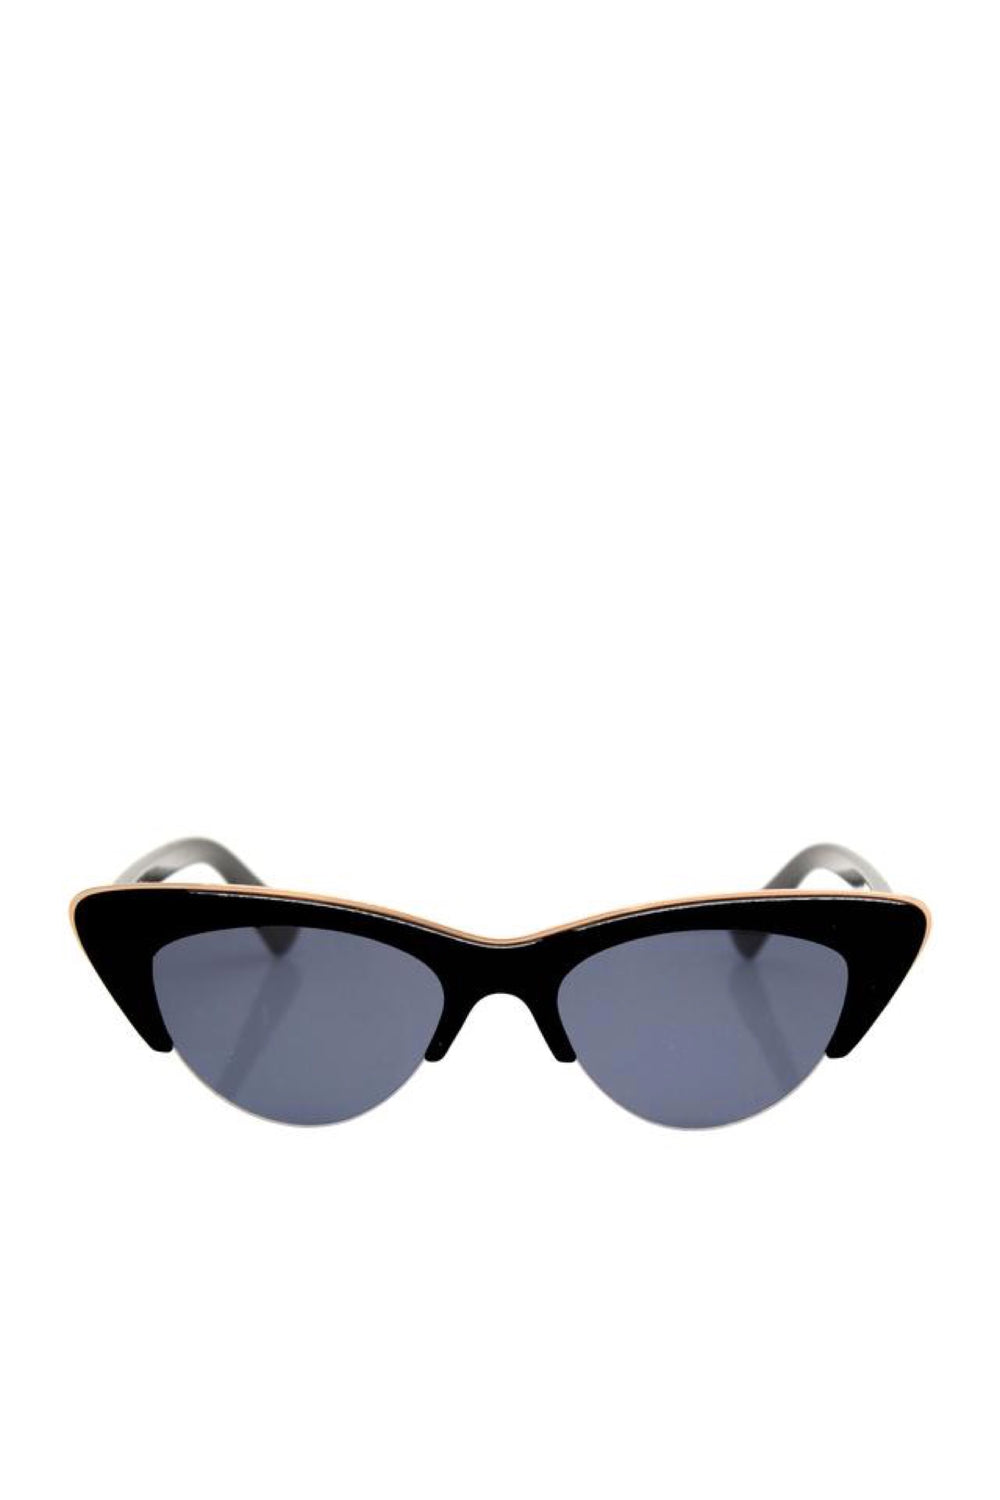 Black Loren Sunglasses